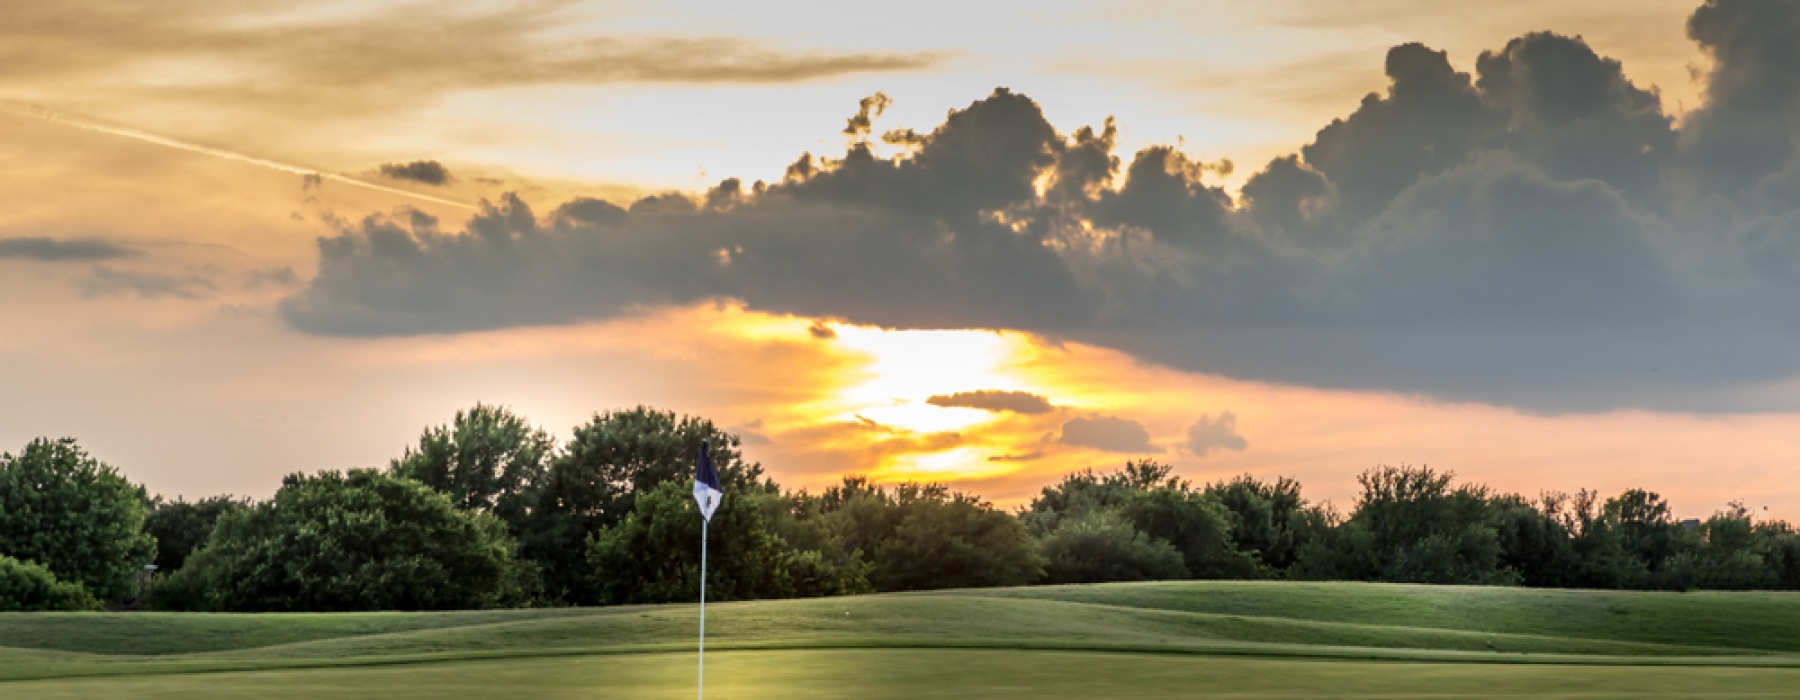 Frisco Texas Golfing PGA Course under the sun